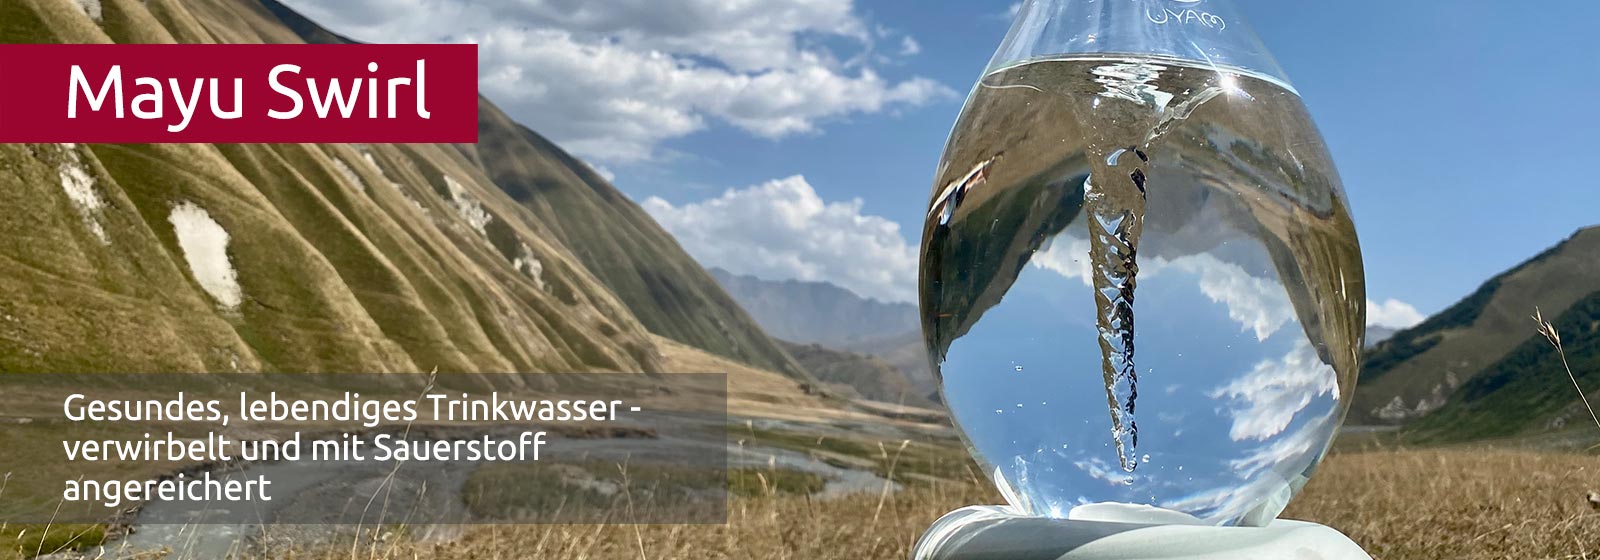 Eine durchsichtige Glaskaraffe mit Wasser und einem Strudel, in dem sich umliegenden Berge verkehrt herum brechen